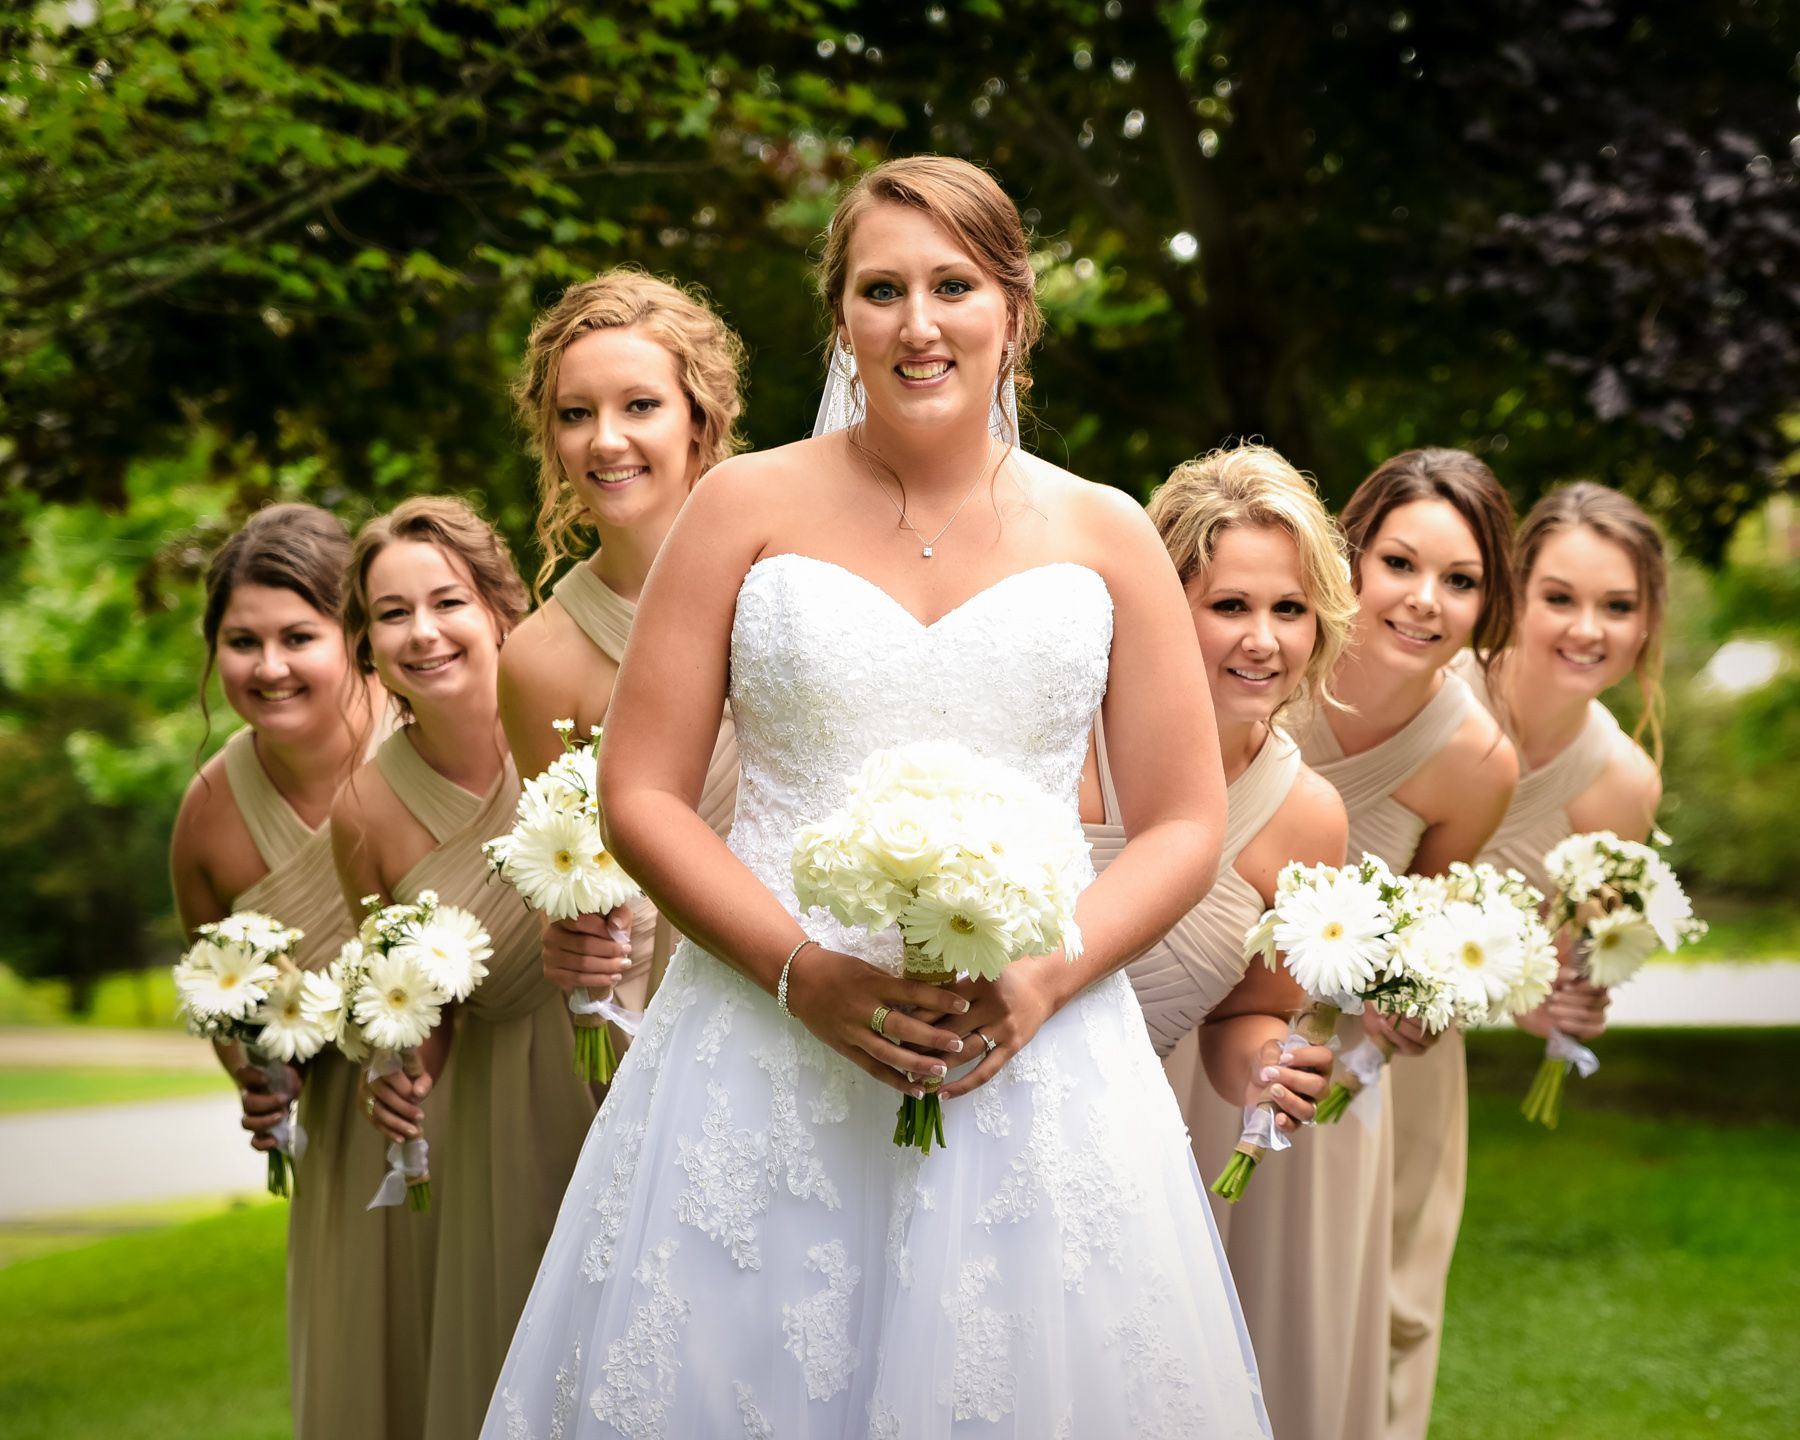 Wedding Photographer - Portfolio: Engagements / Weddings